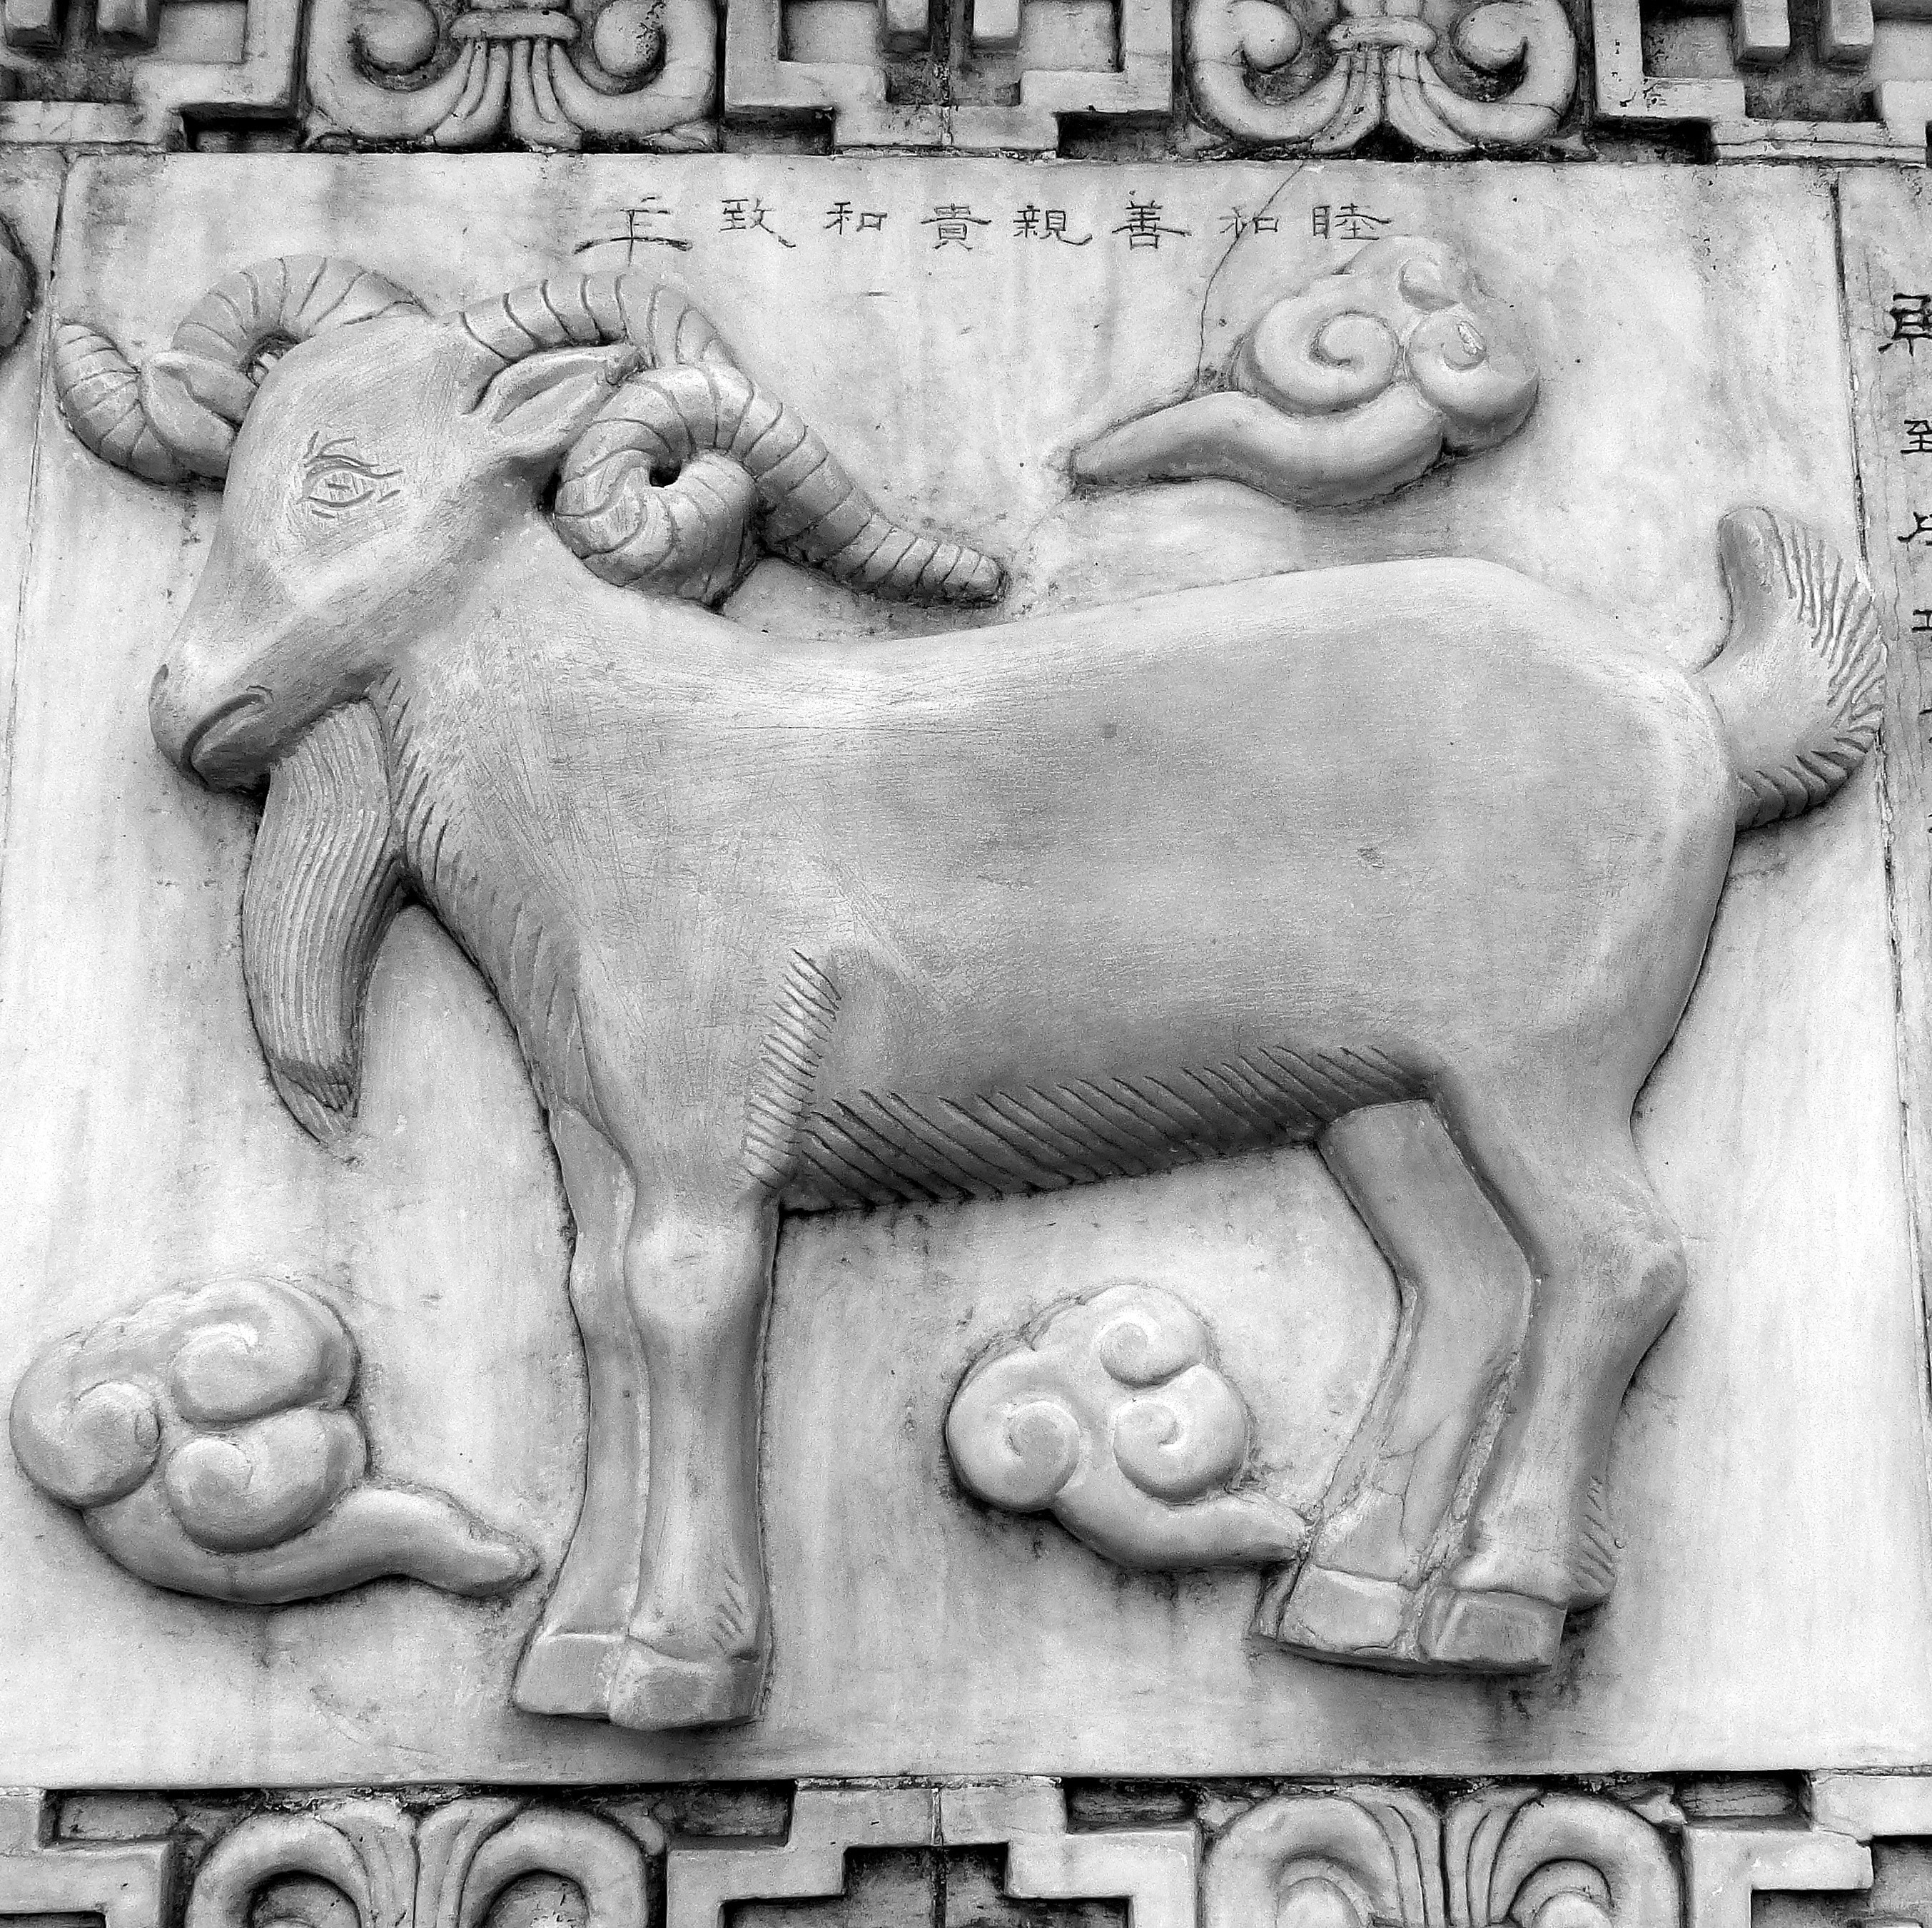 gray goat sculpture